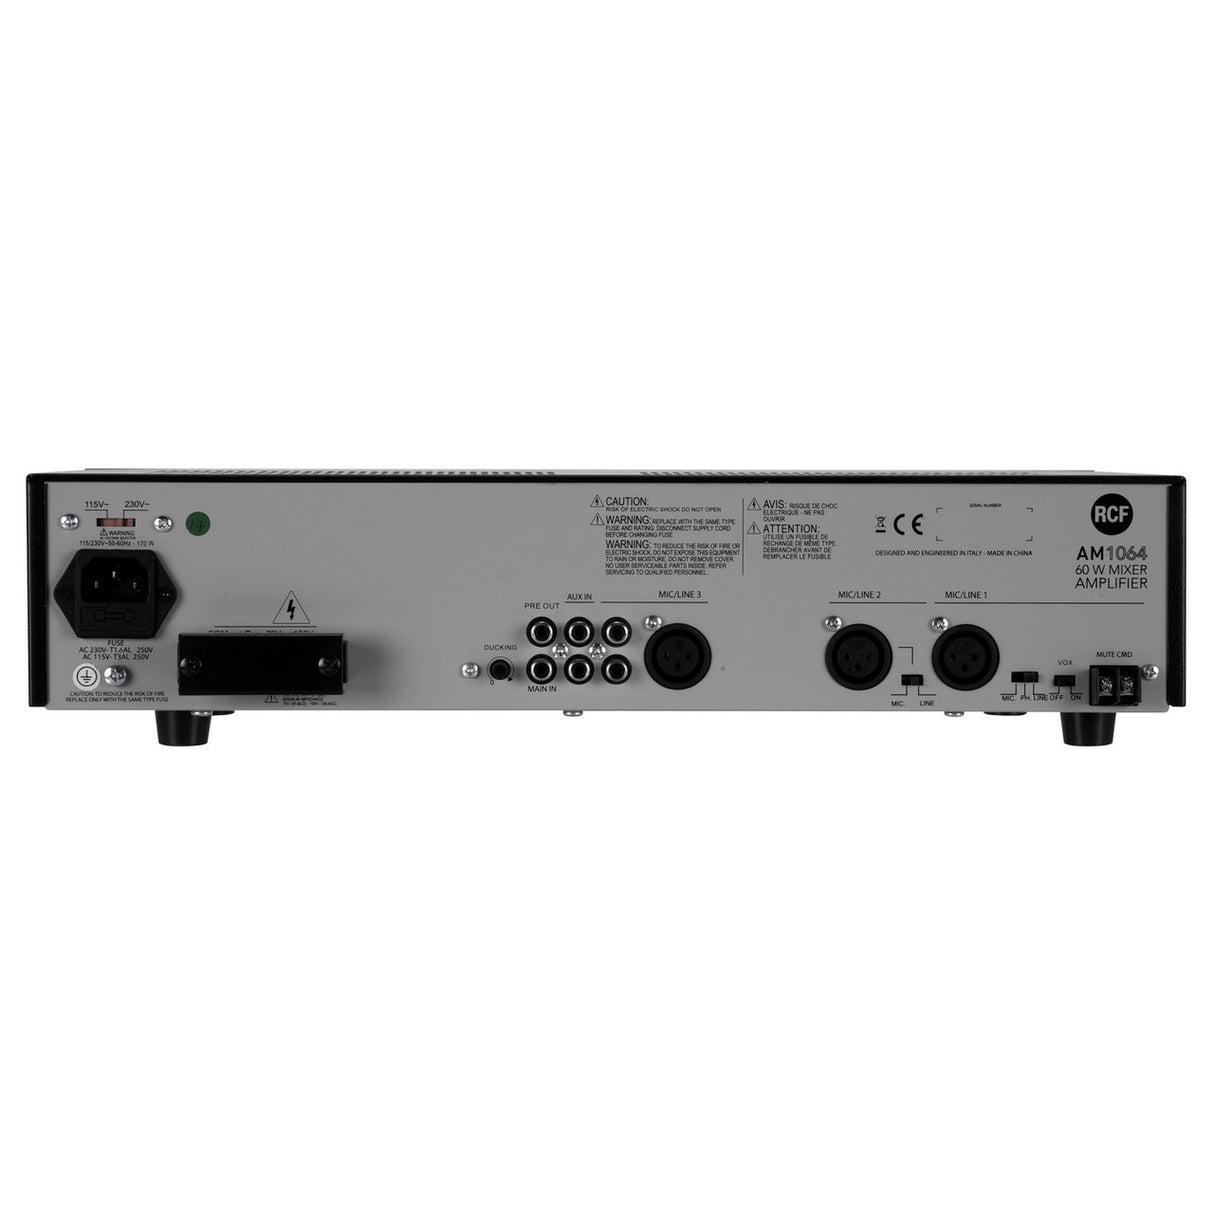 RCF AM1064 | 60W Mixer Amplifier